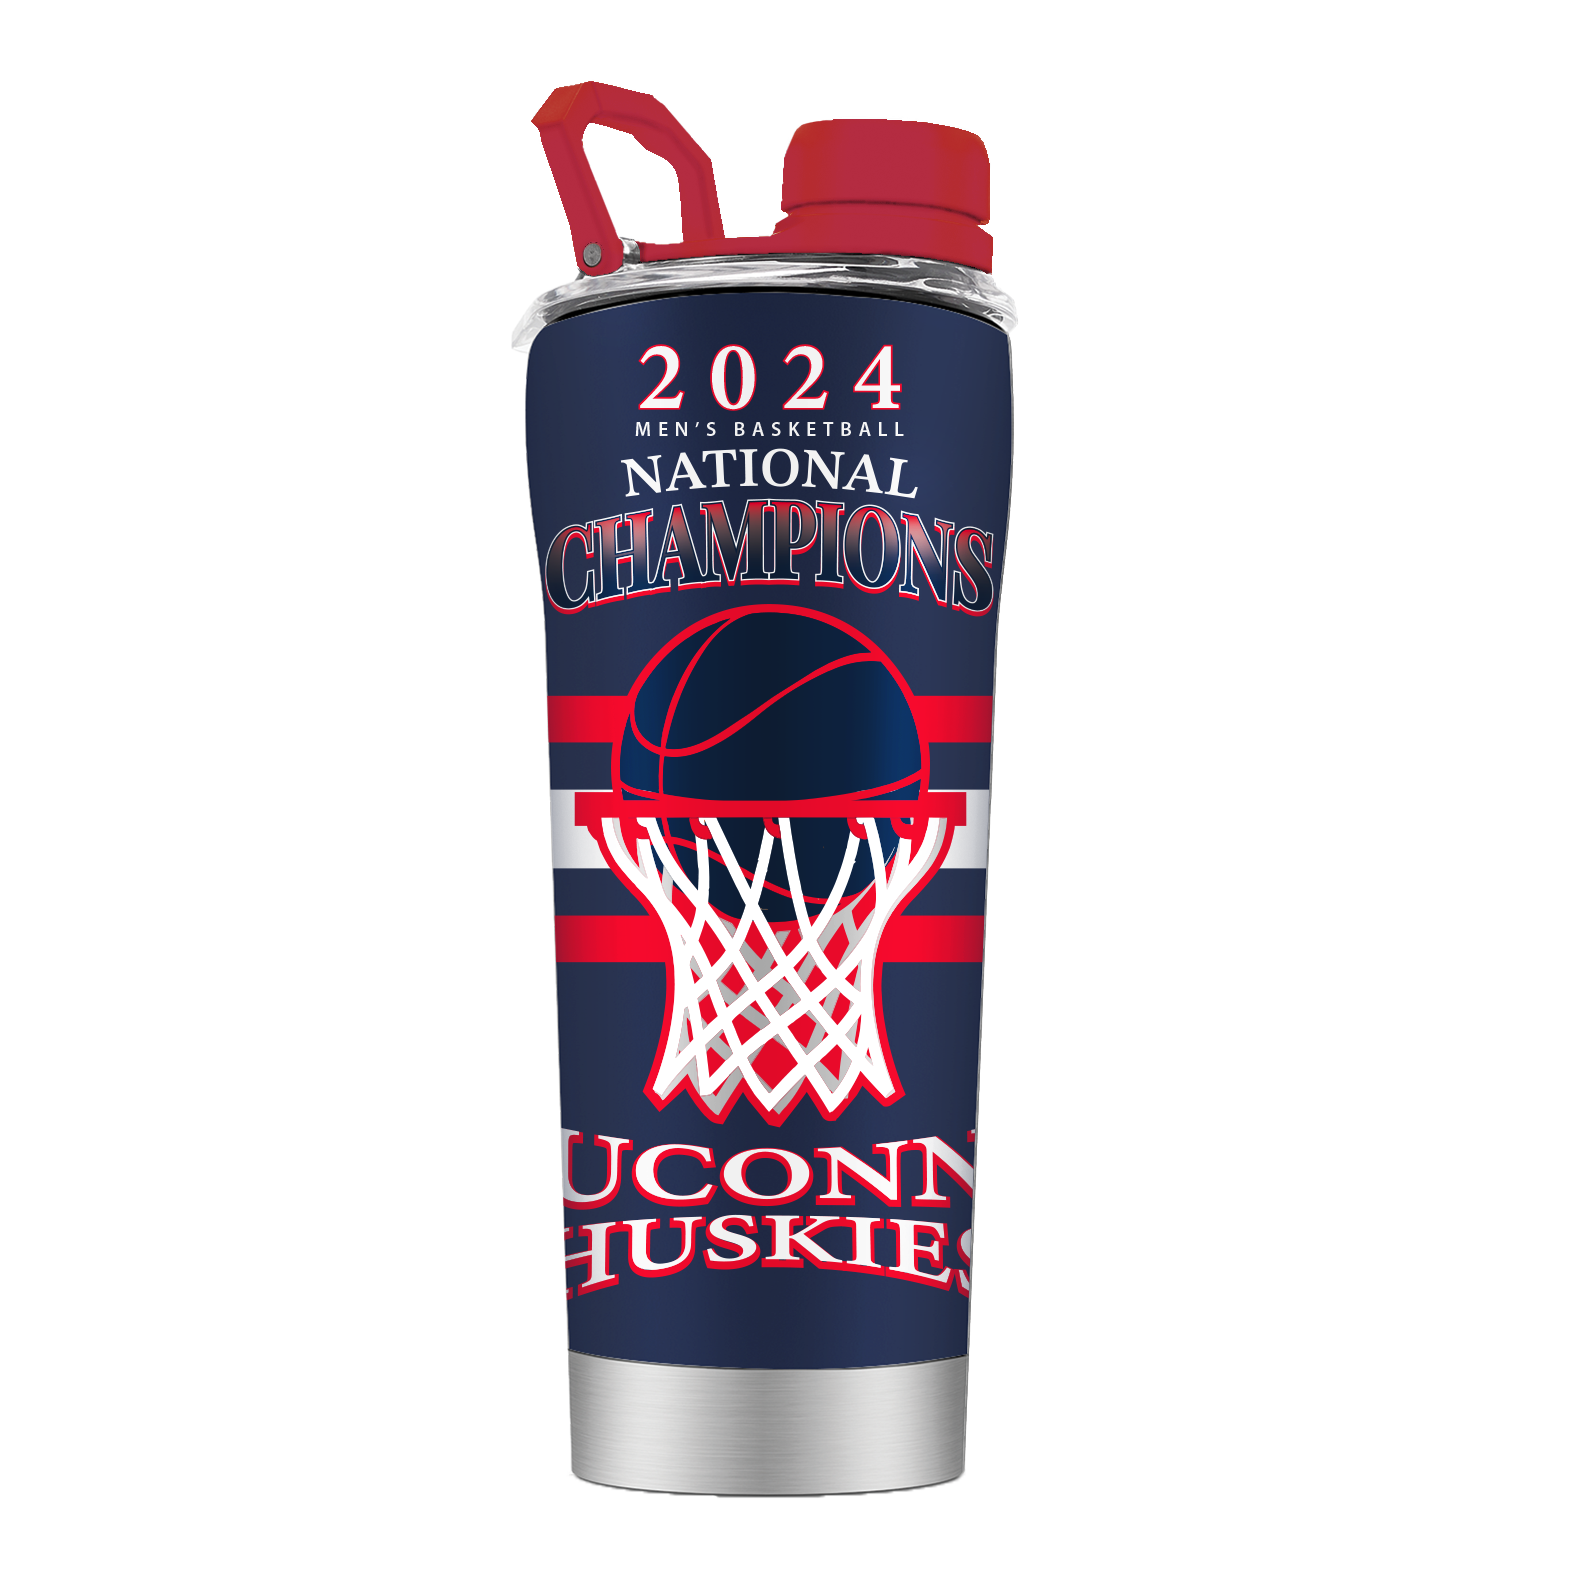 UConn Basketball Stainless Steel Shaker - 2024 National Champions